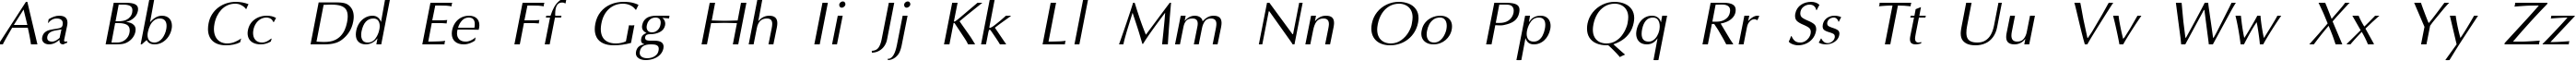 Пример написания английского алфавита шрифтом AGOptCyrillic Normal-Italic